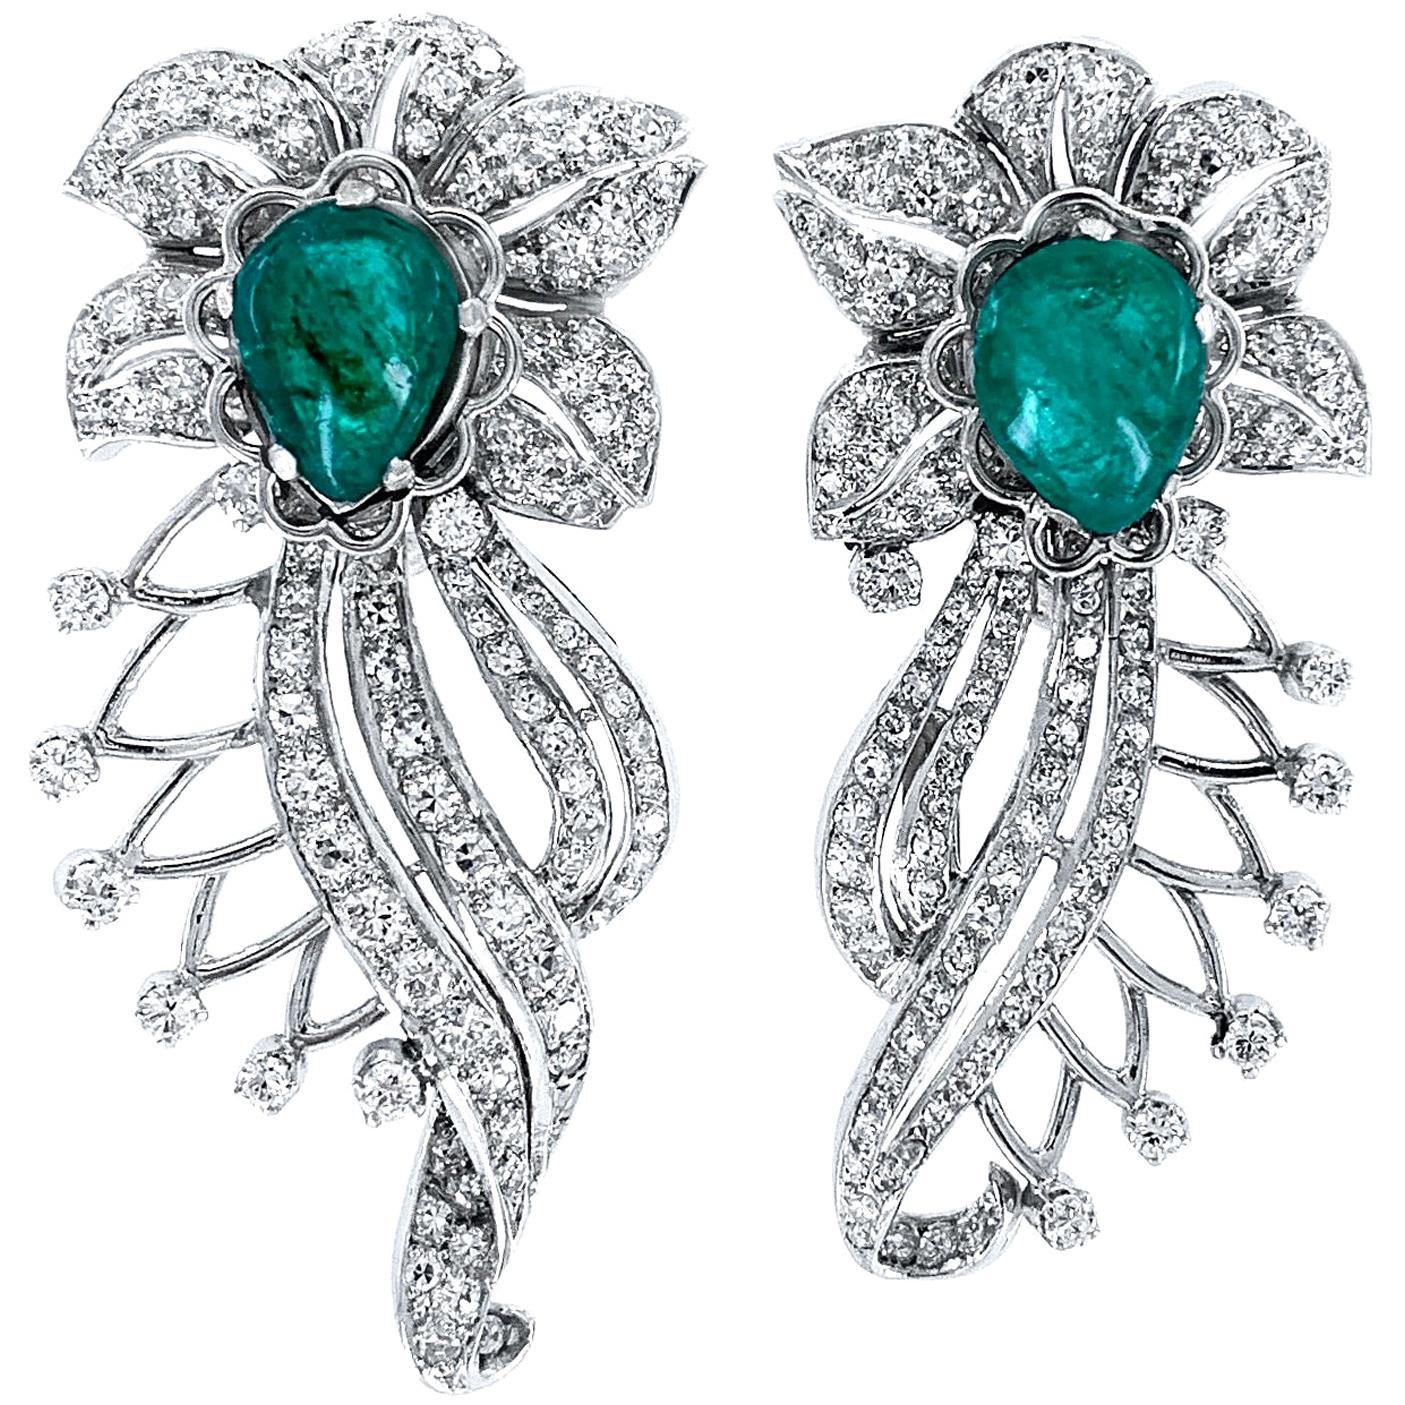 Retro Era 6 Carat Emerald and 2 Carat Diamond Flourish Post Earrings in Platinum